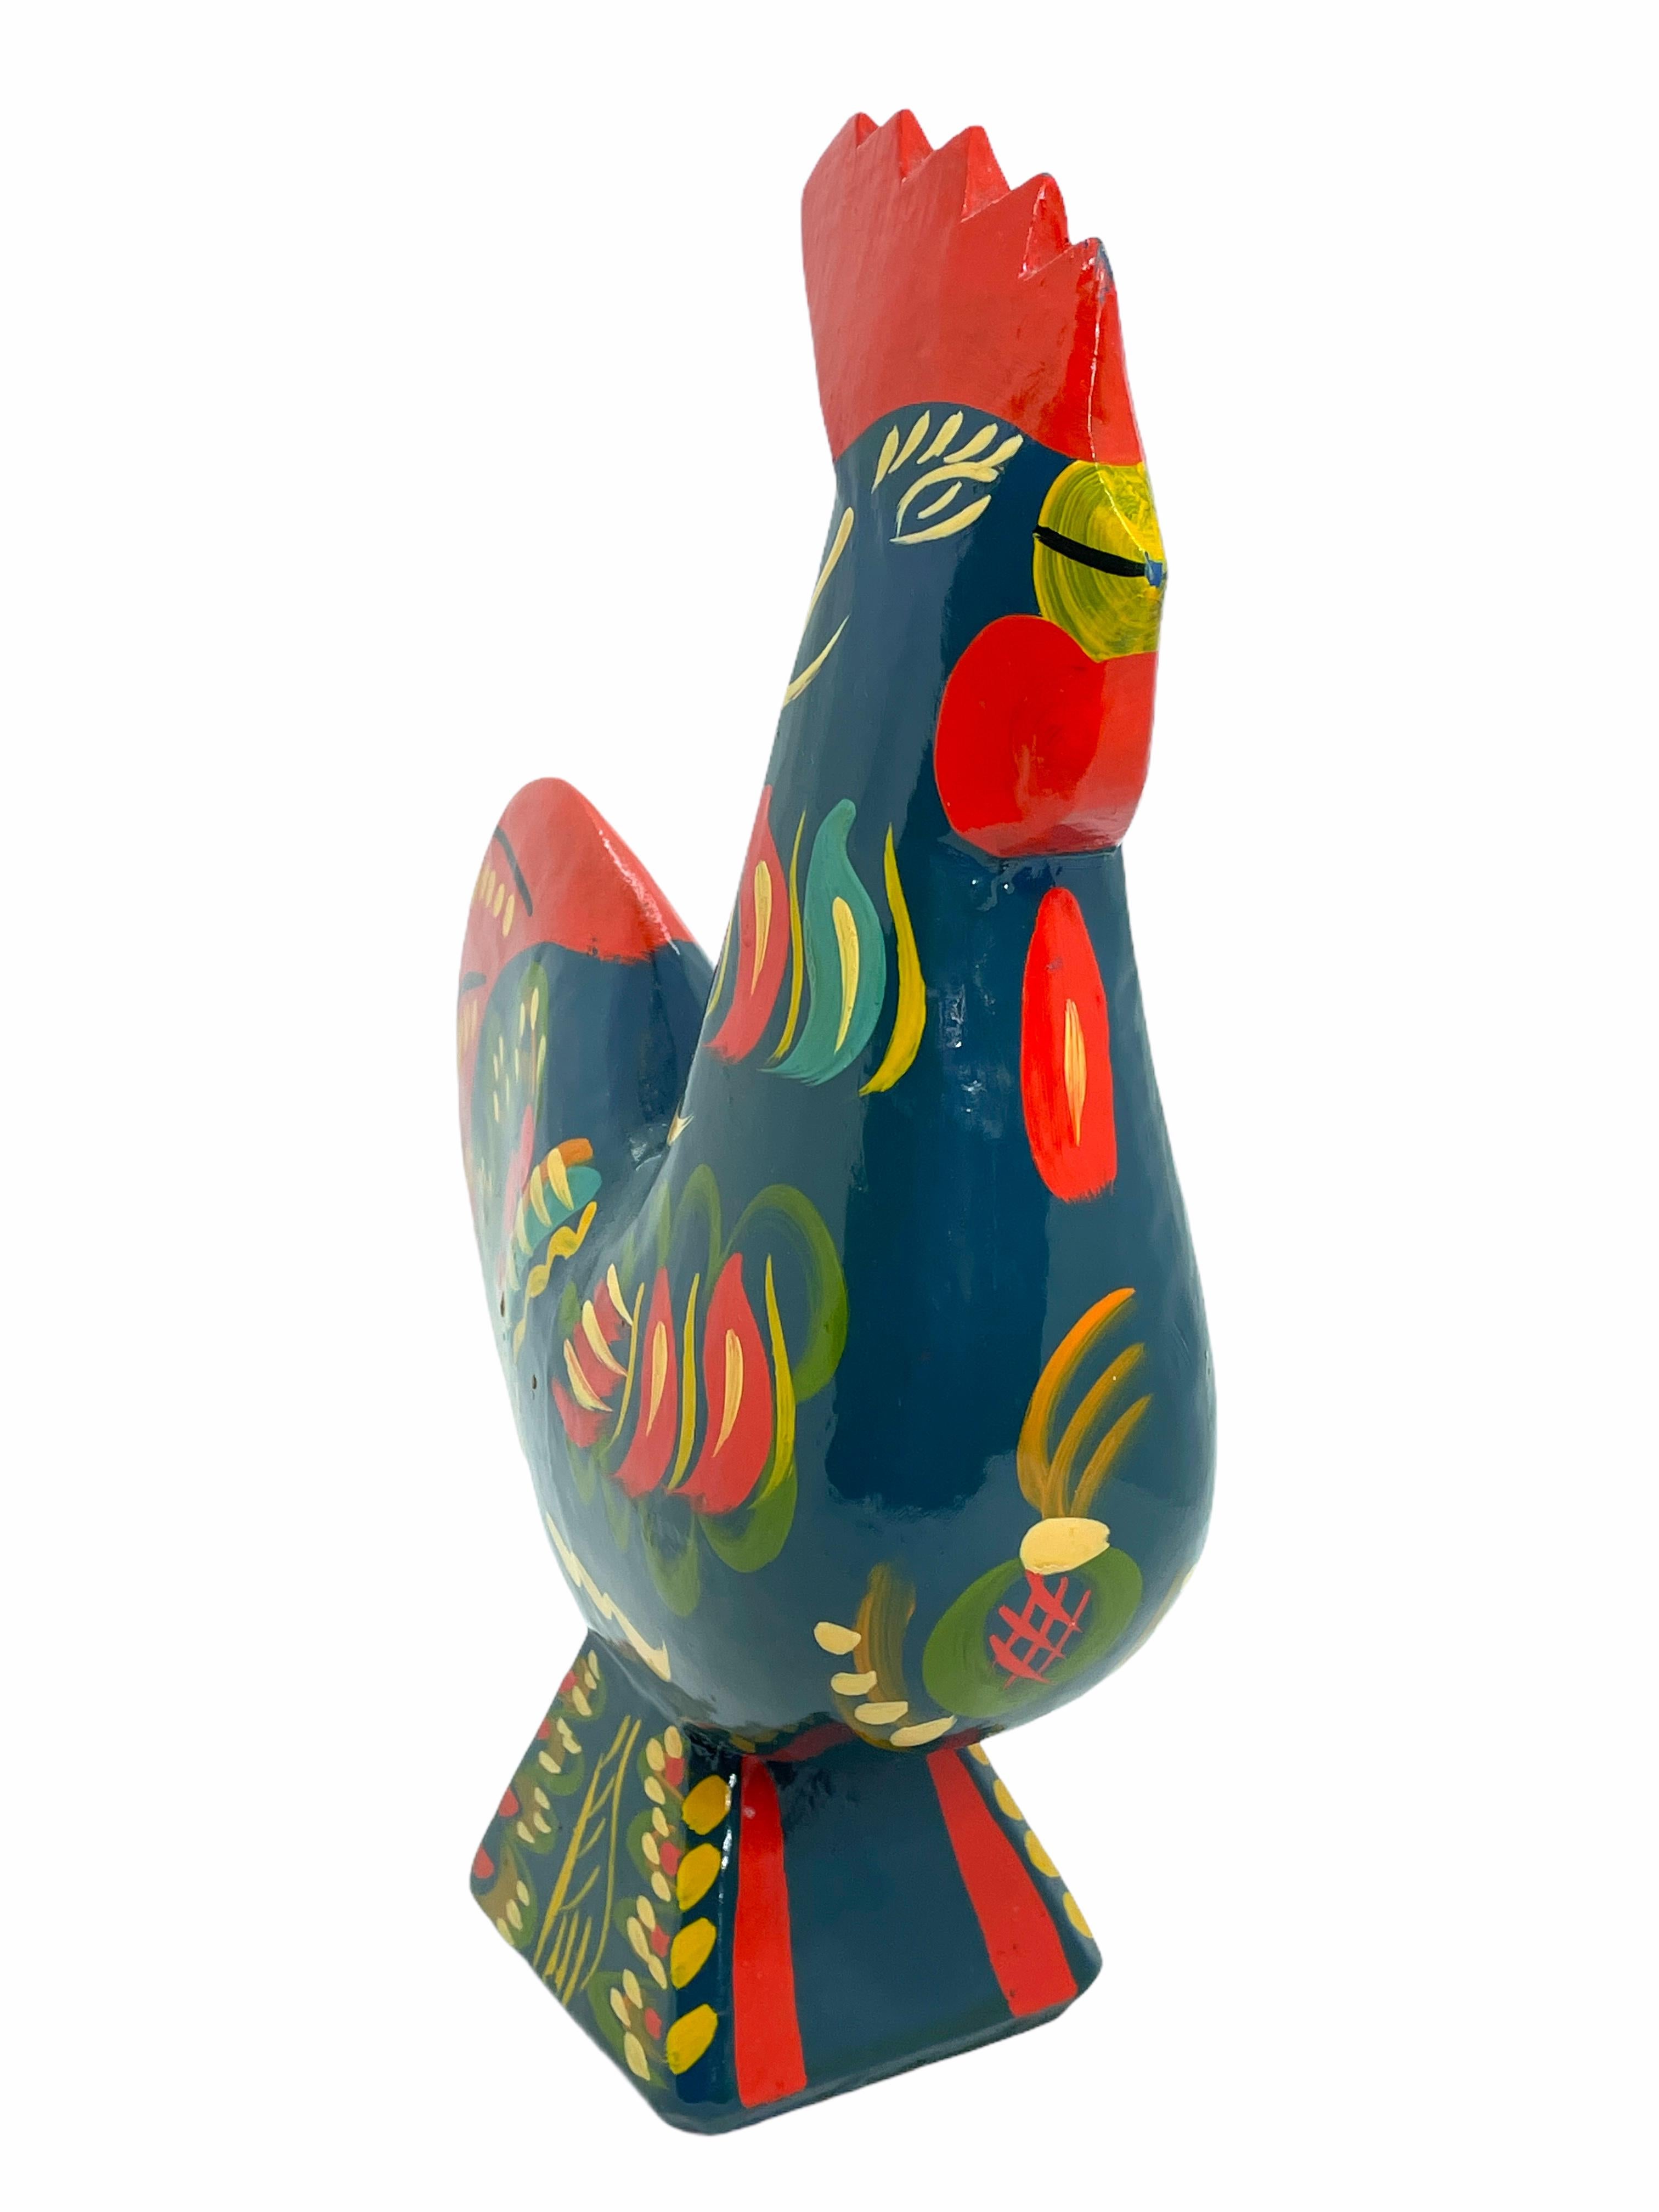 Hand-Carved Rare Large Vintage Swedish Dala Rooster Chicken by Nils Olsson, Sweden Folk Art For Sale